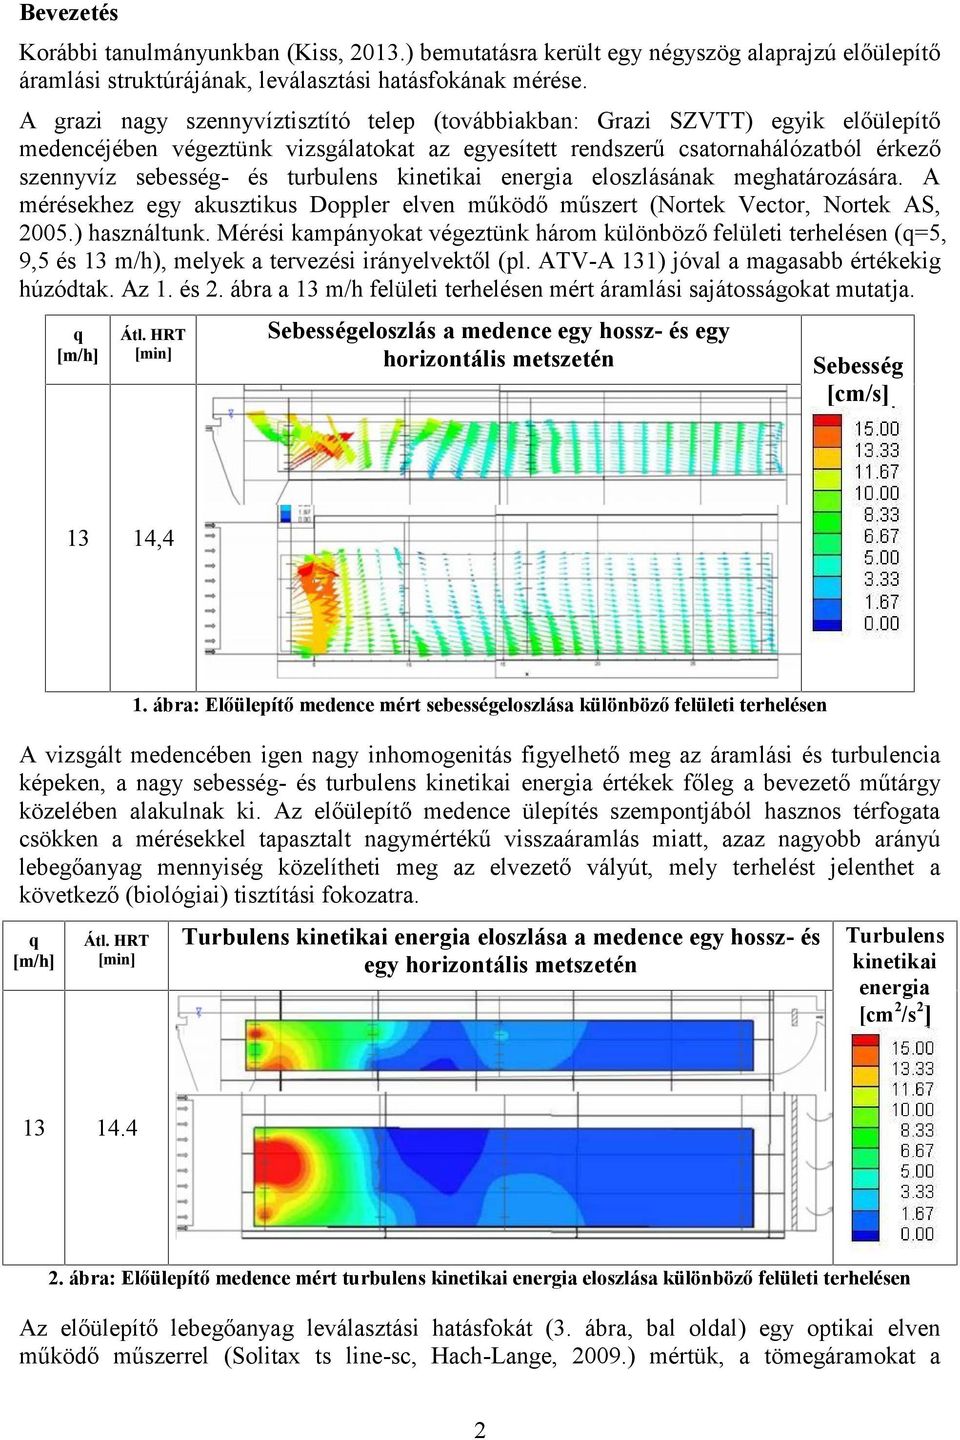 turbulens kinetikai energia eloszlásának meghatározására. A mérésekhez egy akusztikus Doppler elven működő műszert (Nortek Vec tor, Nortek AS, 2005.) használtunk.